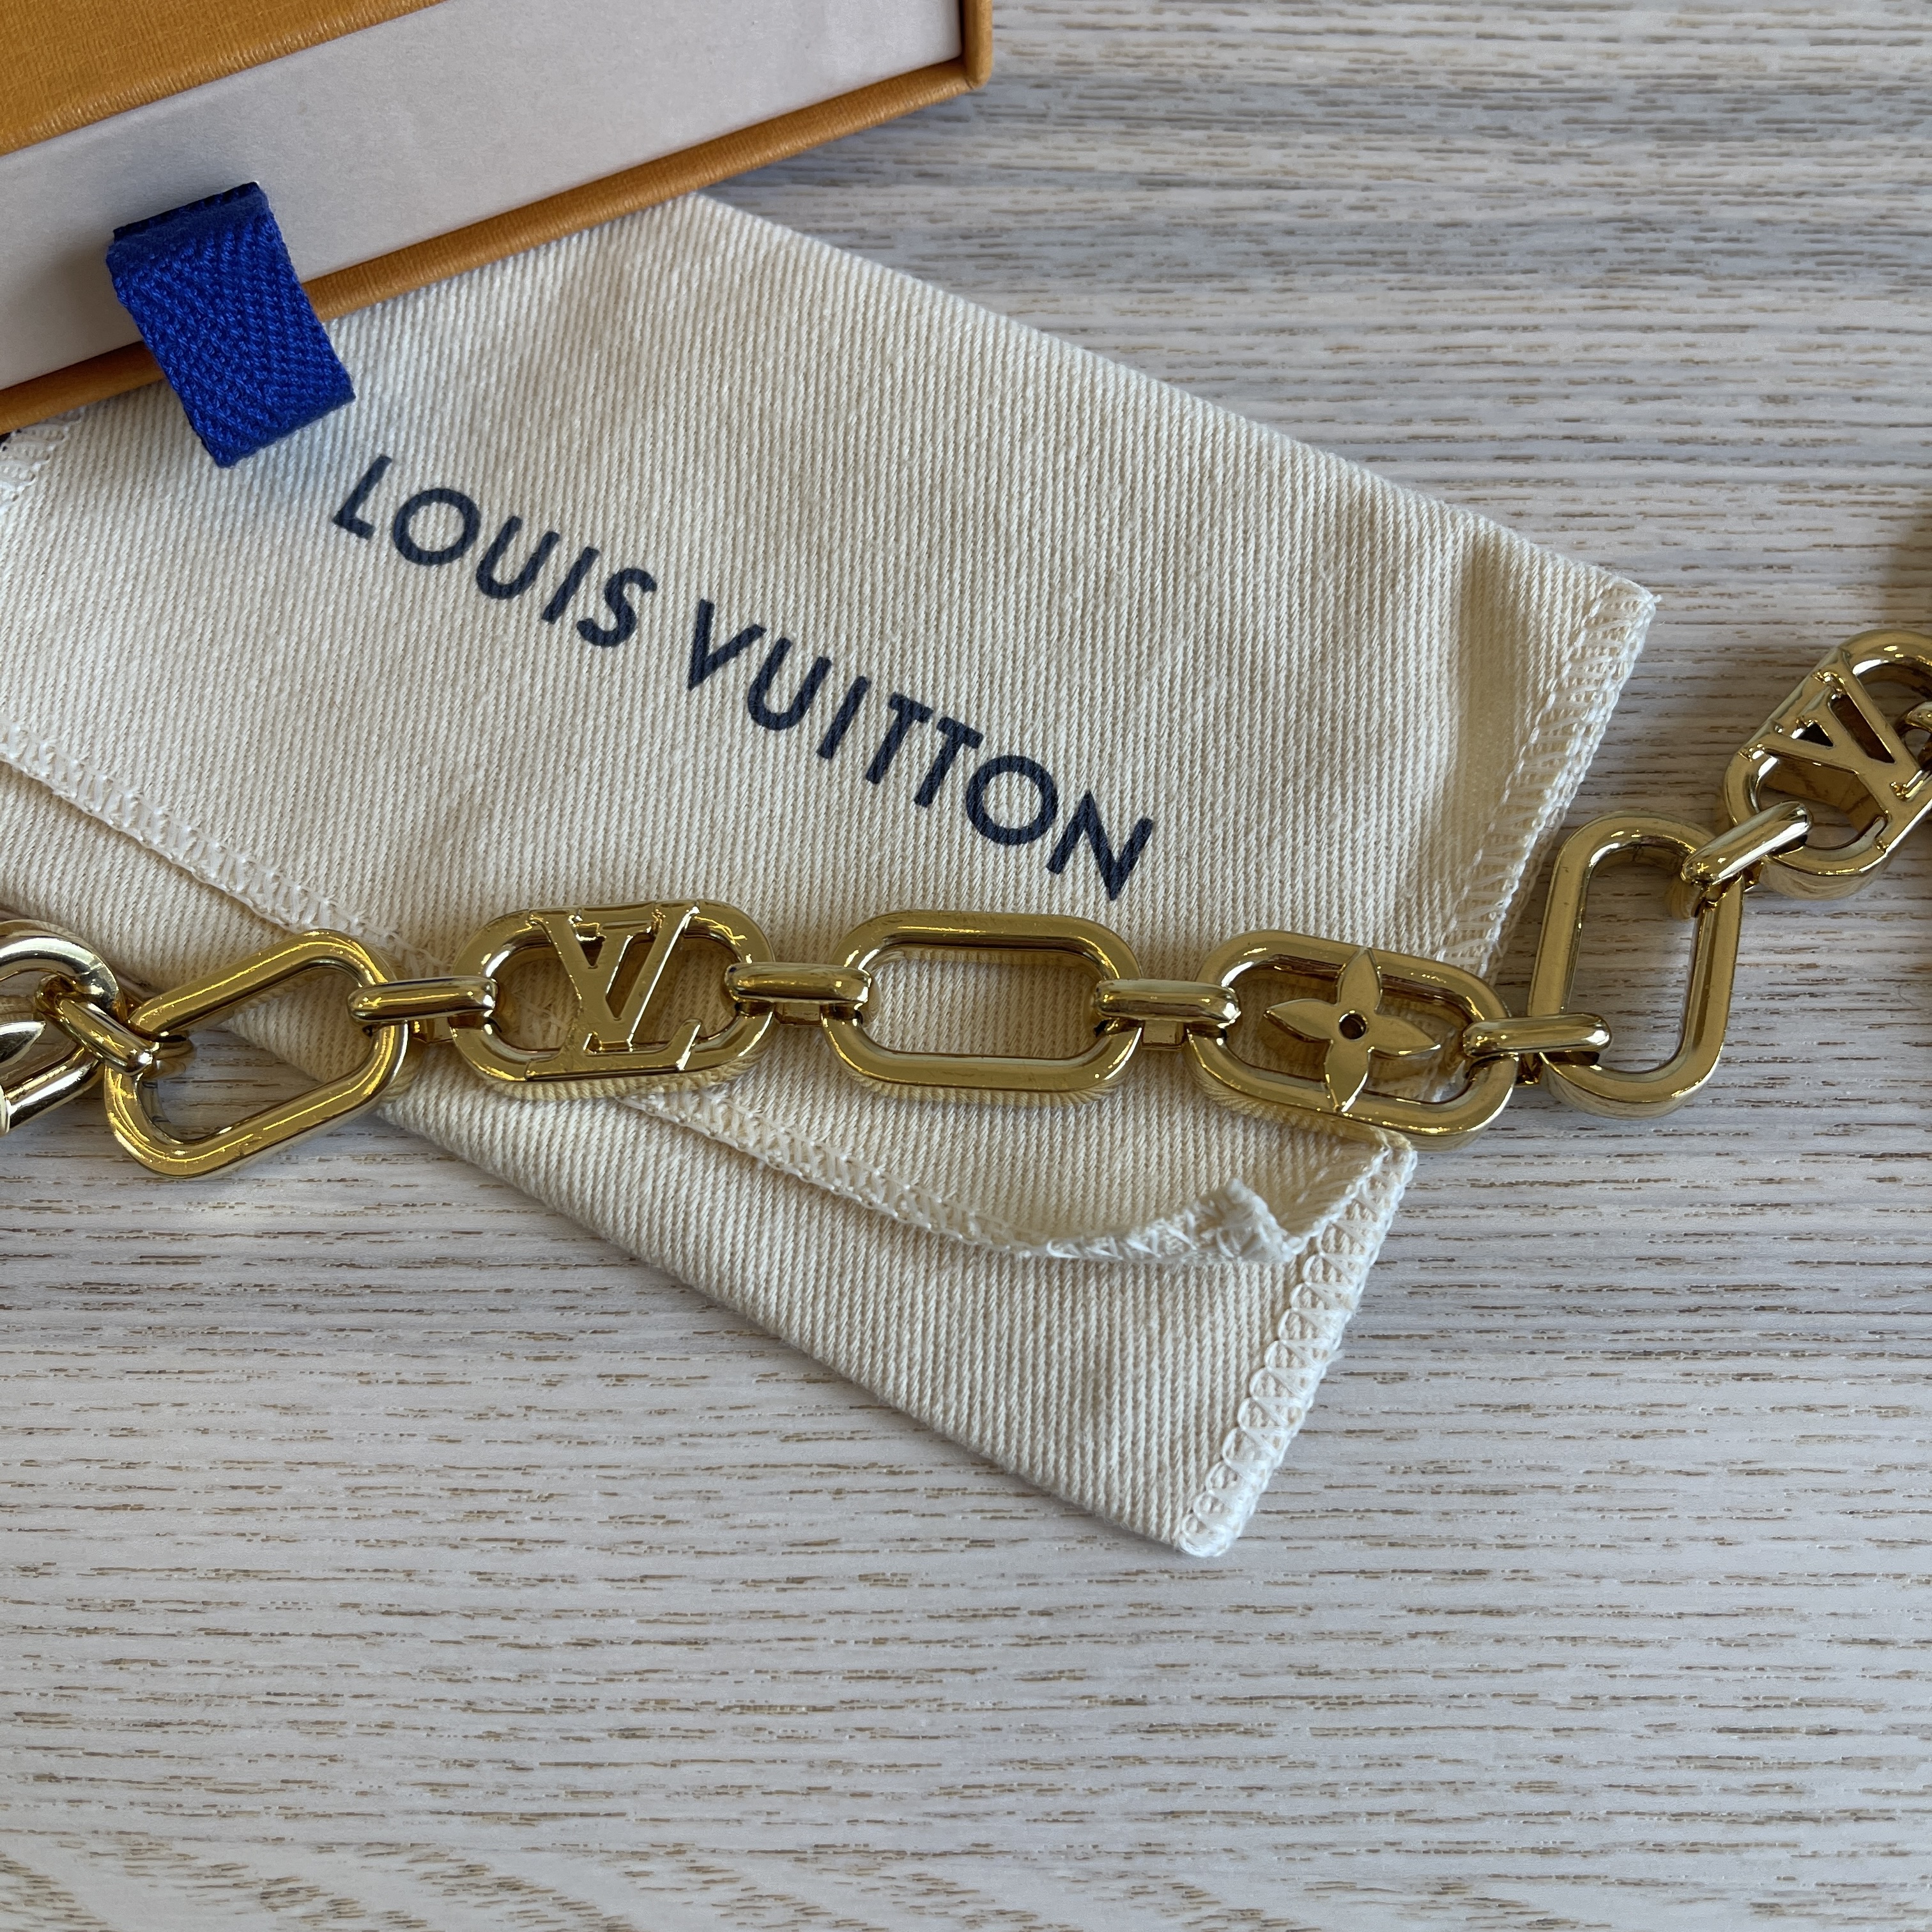 LOUIS VUITTON LV Edge Chain Bag Charm Silver Gold 747871